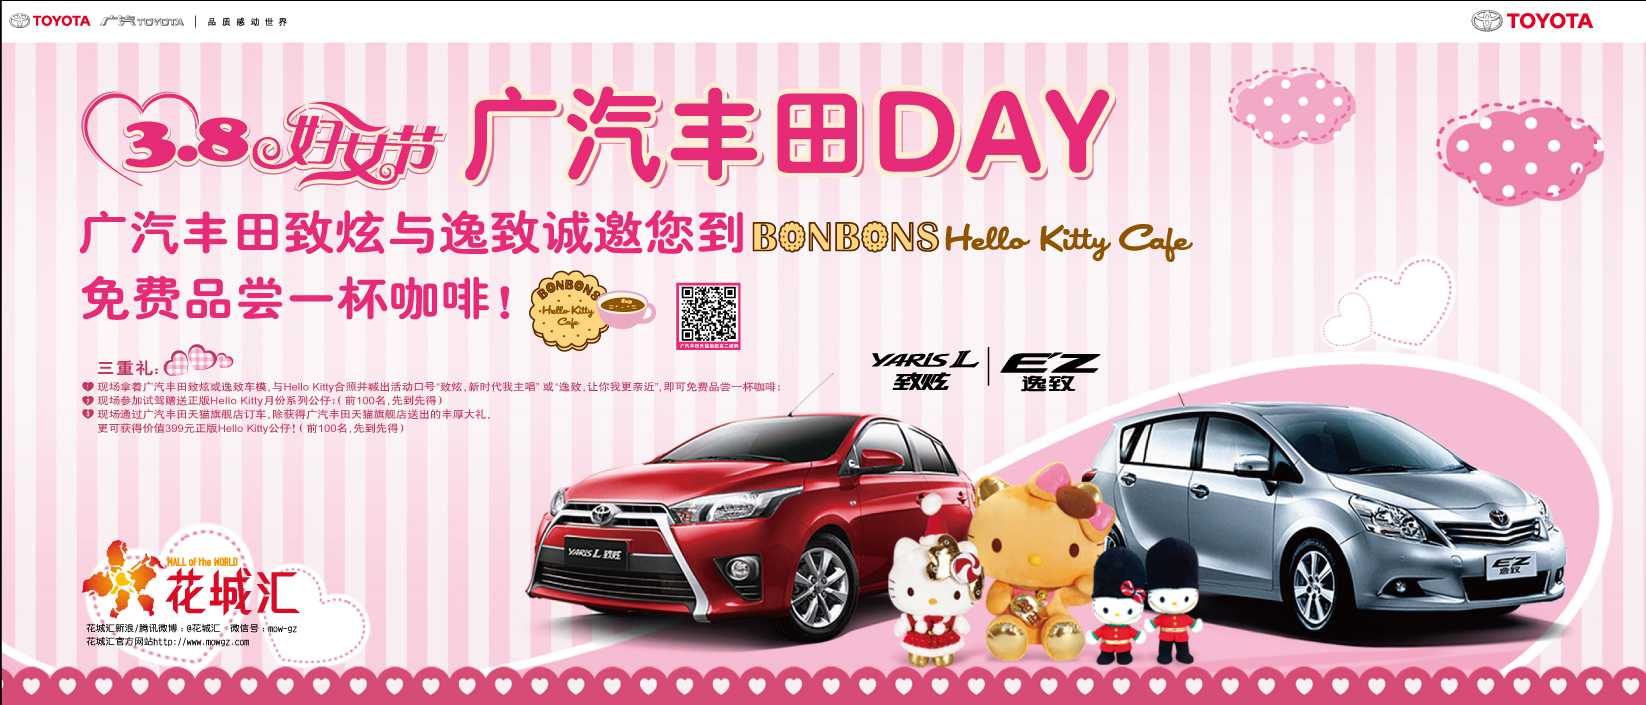 Gac Toyota: eu tenho um encontro com Hello Kitty